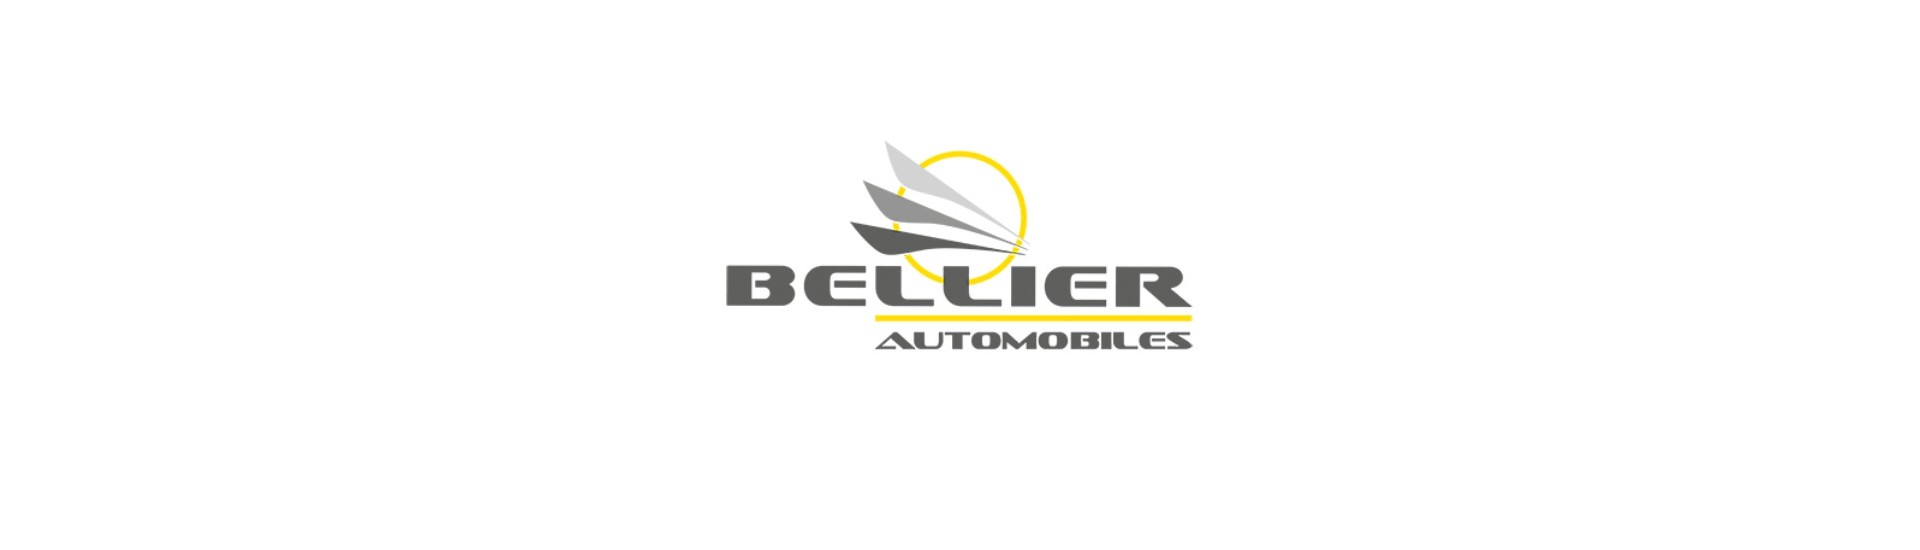 Kit de întreținere la cel mai bun preț pentru o mașină fără permis Bellier